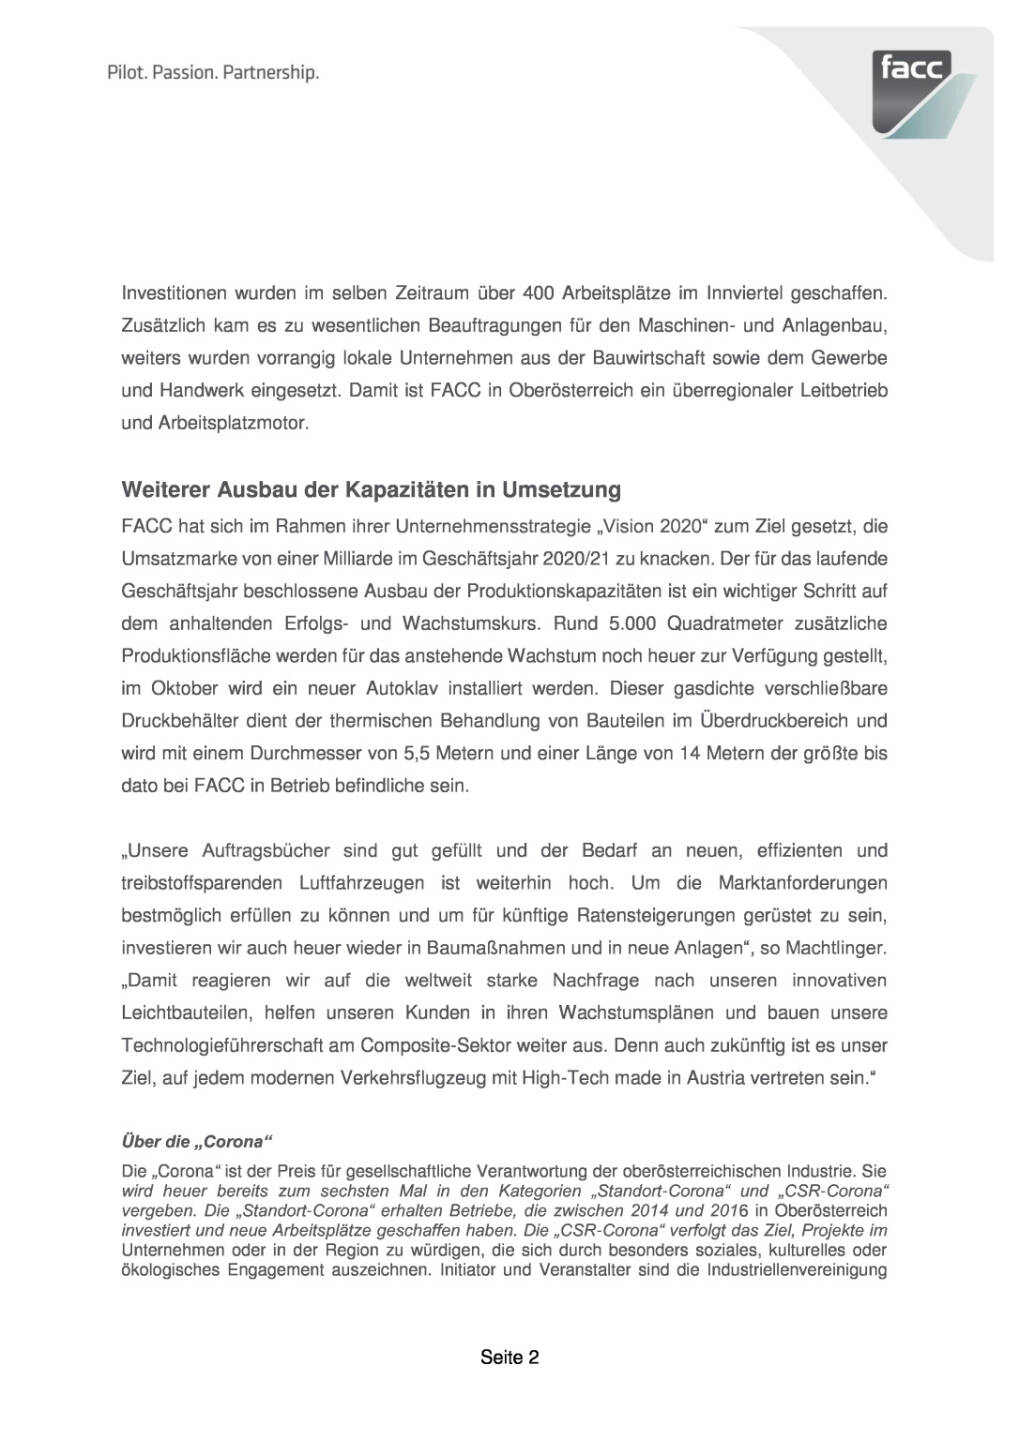 FACC erhält Auszeichnung für Investitionen am Standort Oberösterreich, Seite 2/4, komplettes Dokument unter http://boerse-social.com/static/uploads/file_2149_facc_erhalt_auszeichnung_fur_investitionen_am_standort_oberosterreich.pdf